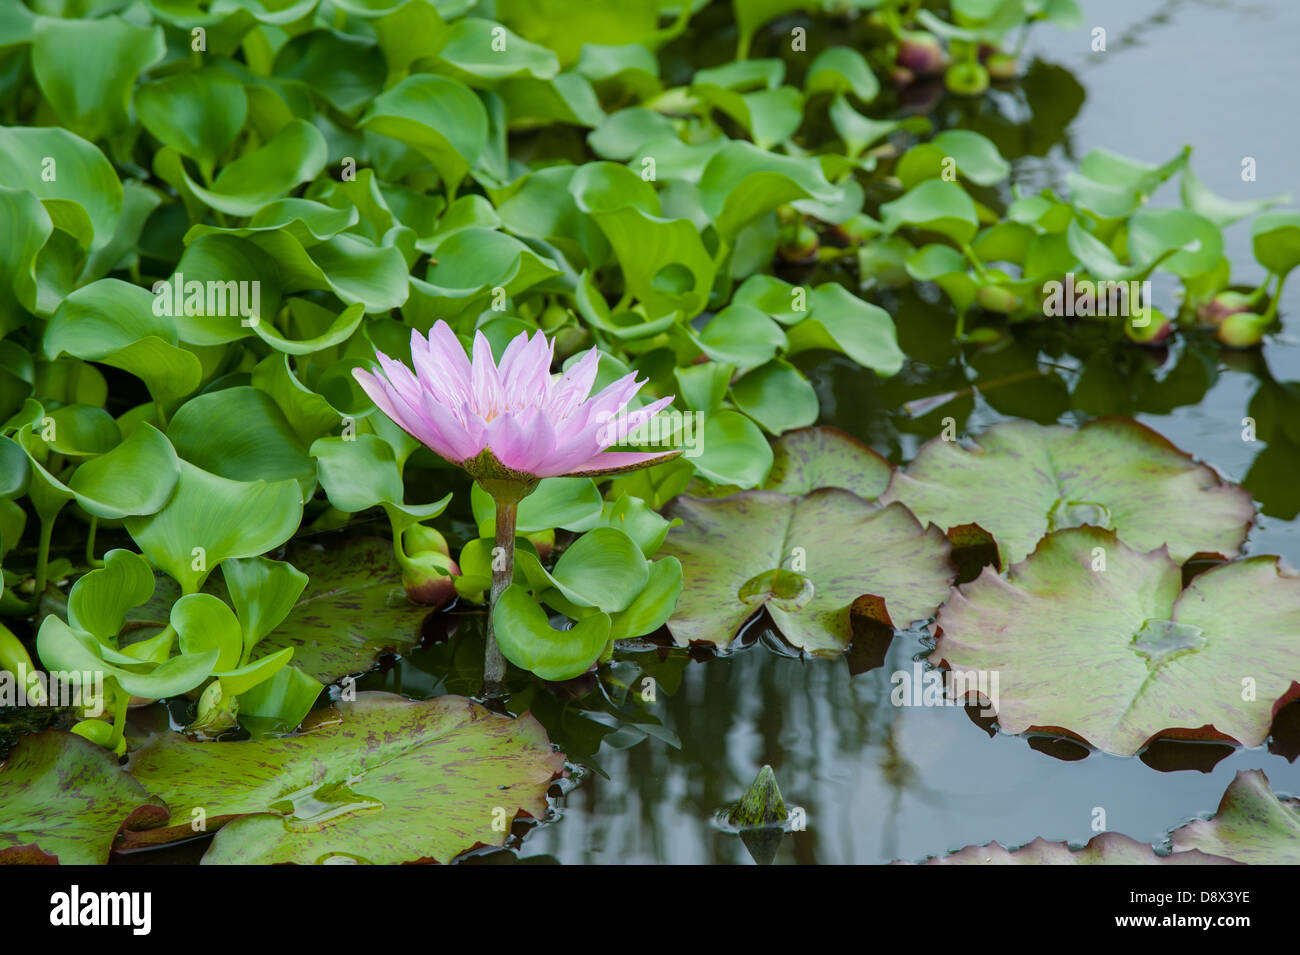 Immagine rilassante di ninfee in fioritura nelle tranquille acque del laghetto. Foto Stock